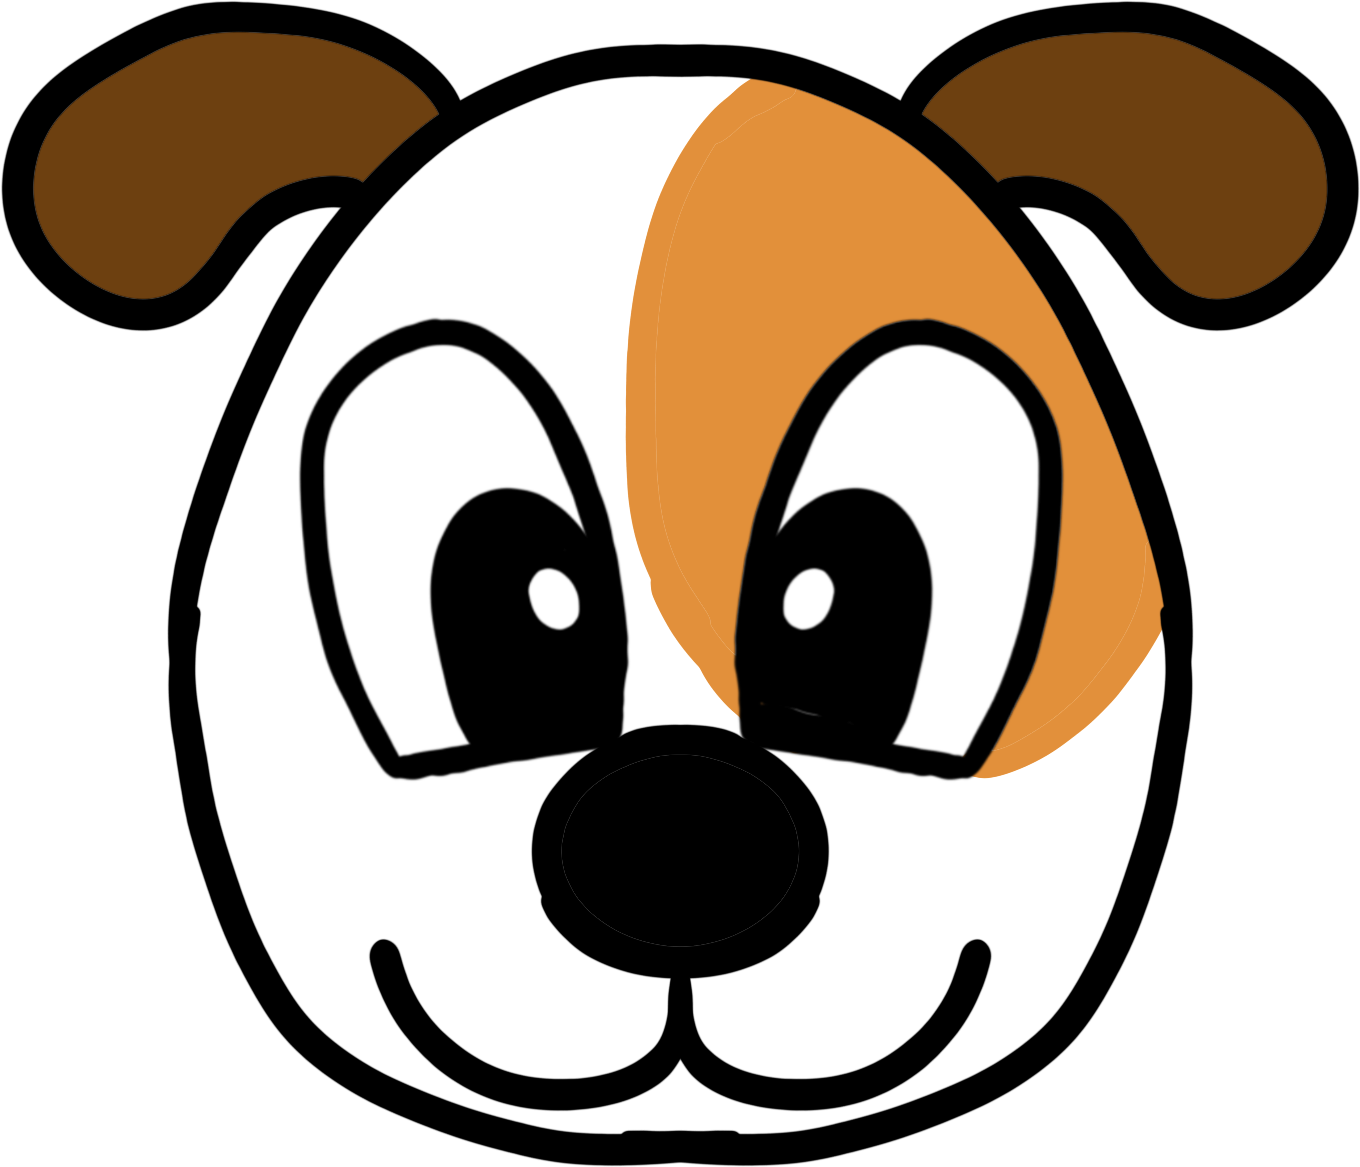 可愛卡通狗狗PSD圖案素材免費下載 - 尺寸2000 × 2000px - 圖形ID401406163 - Lovepik